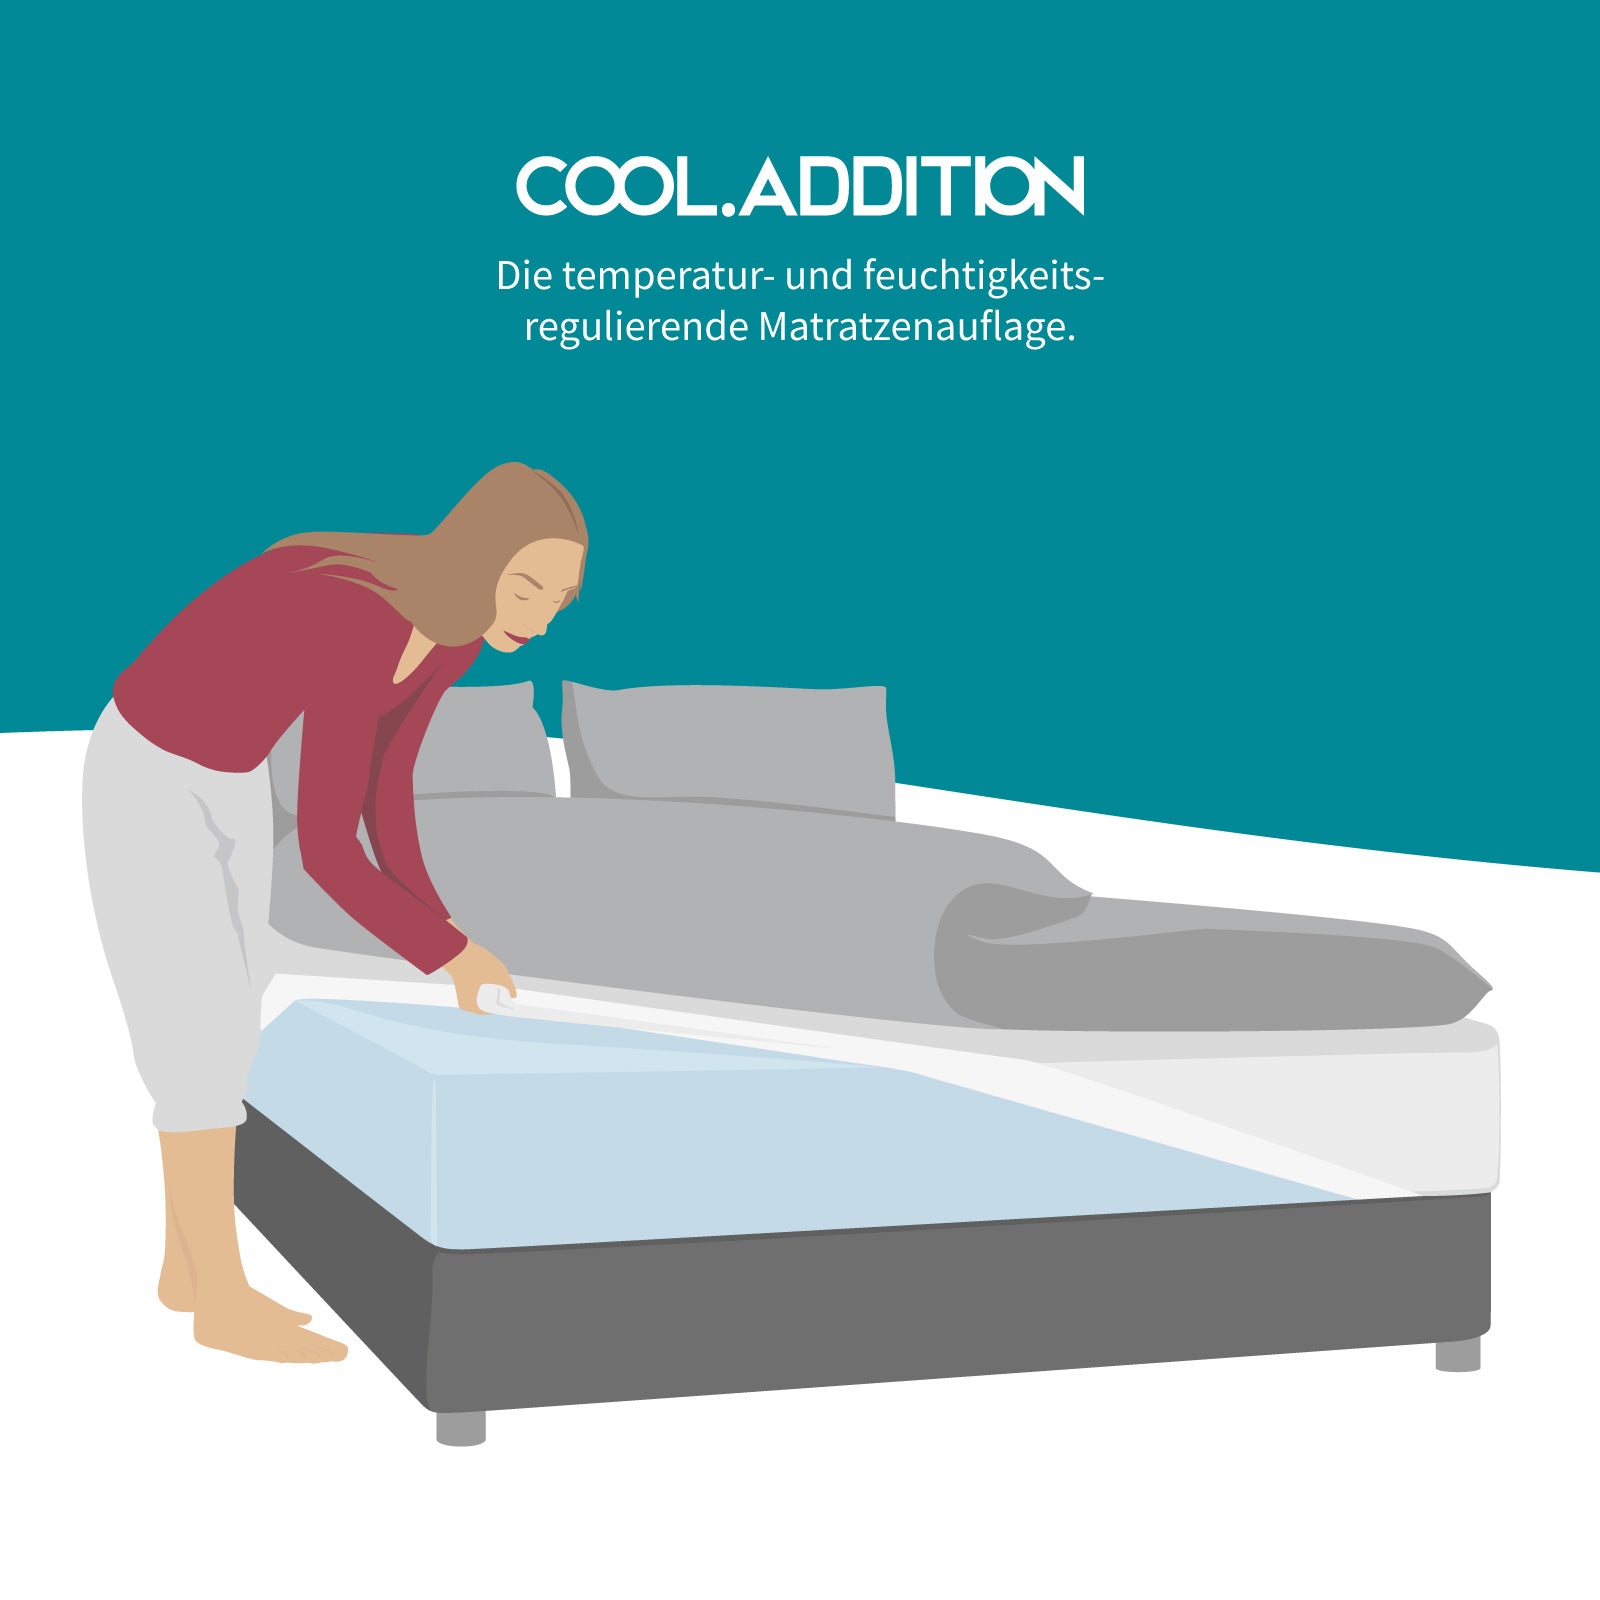 Temperaturregulierendes Zusatzlaken Cool.ADDITION  - Kühleffekt für ideales Schlafklima | Mildert Hitzewallungen